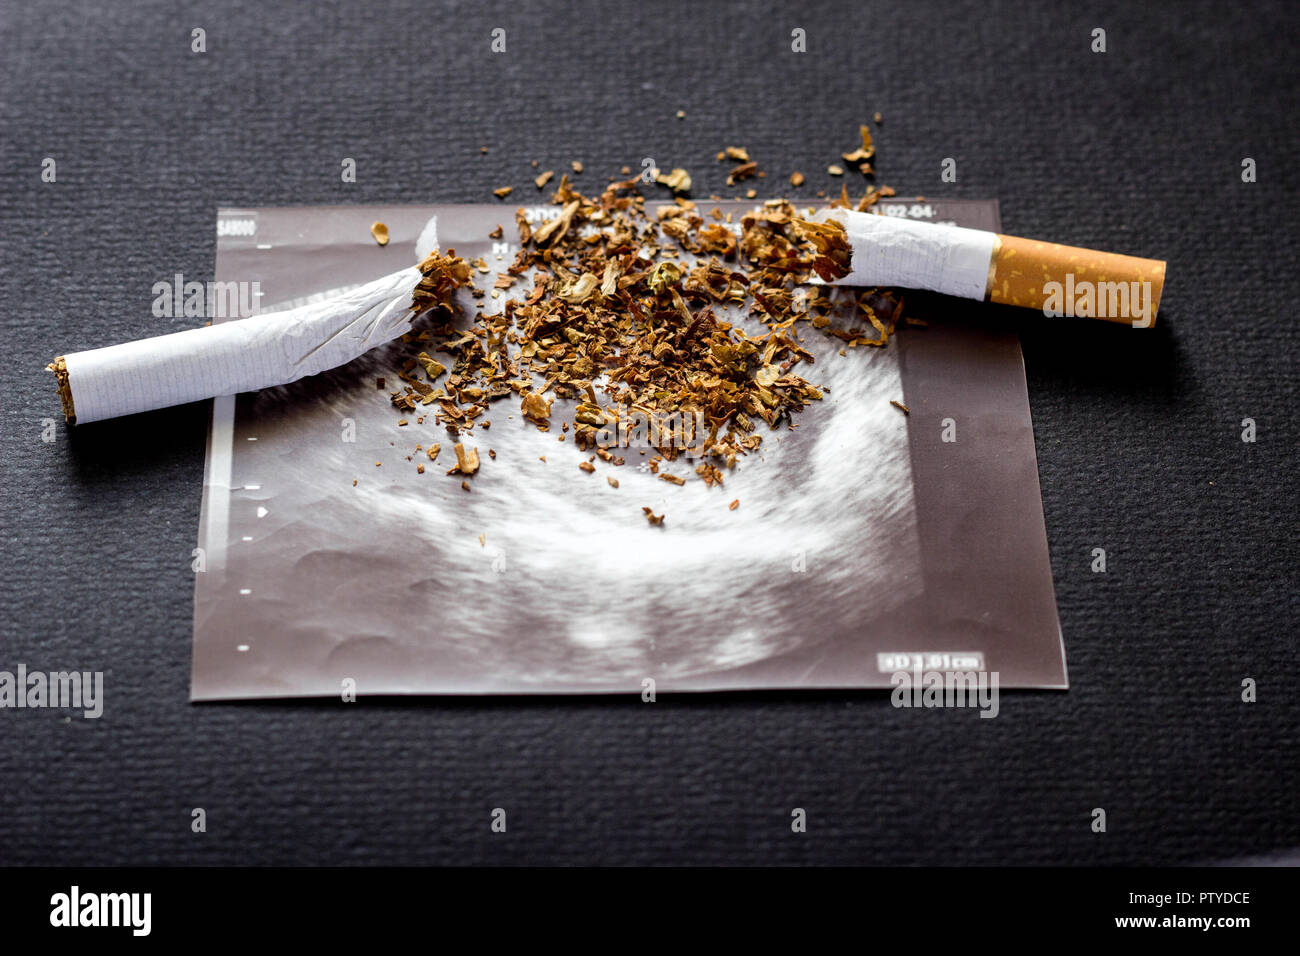 Broken cigarette on a picture of pregnancy uzi, smoking and pregnancy, gestation and cigarette Stock Photo